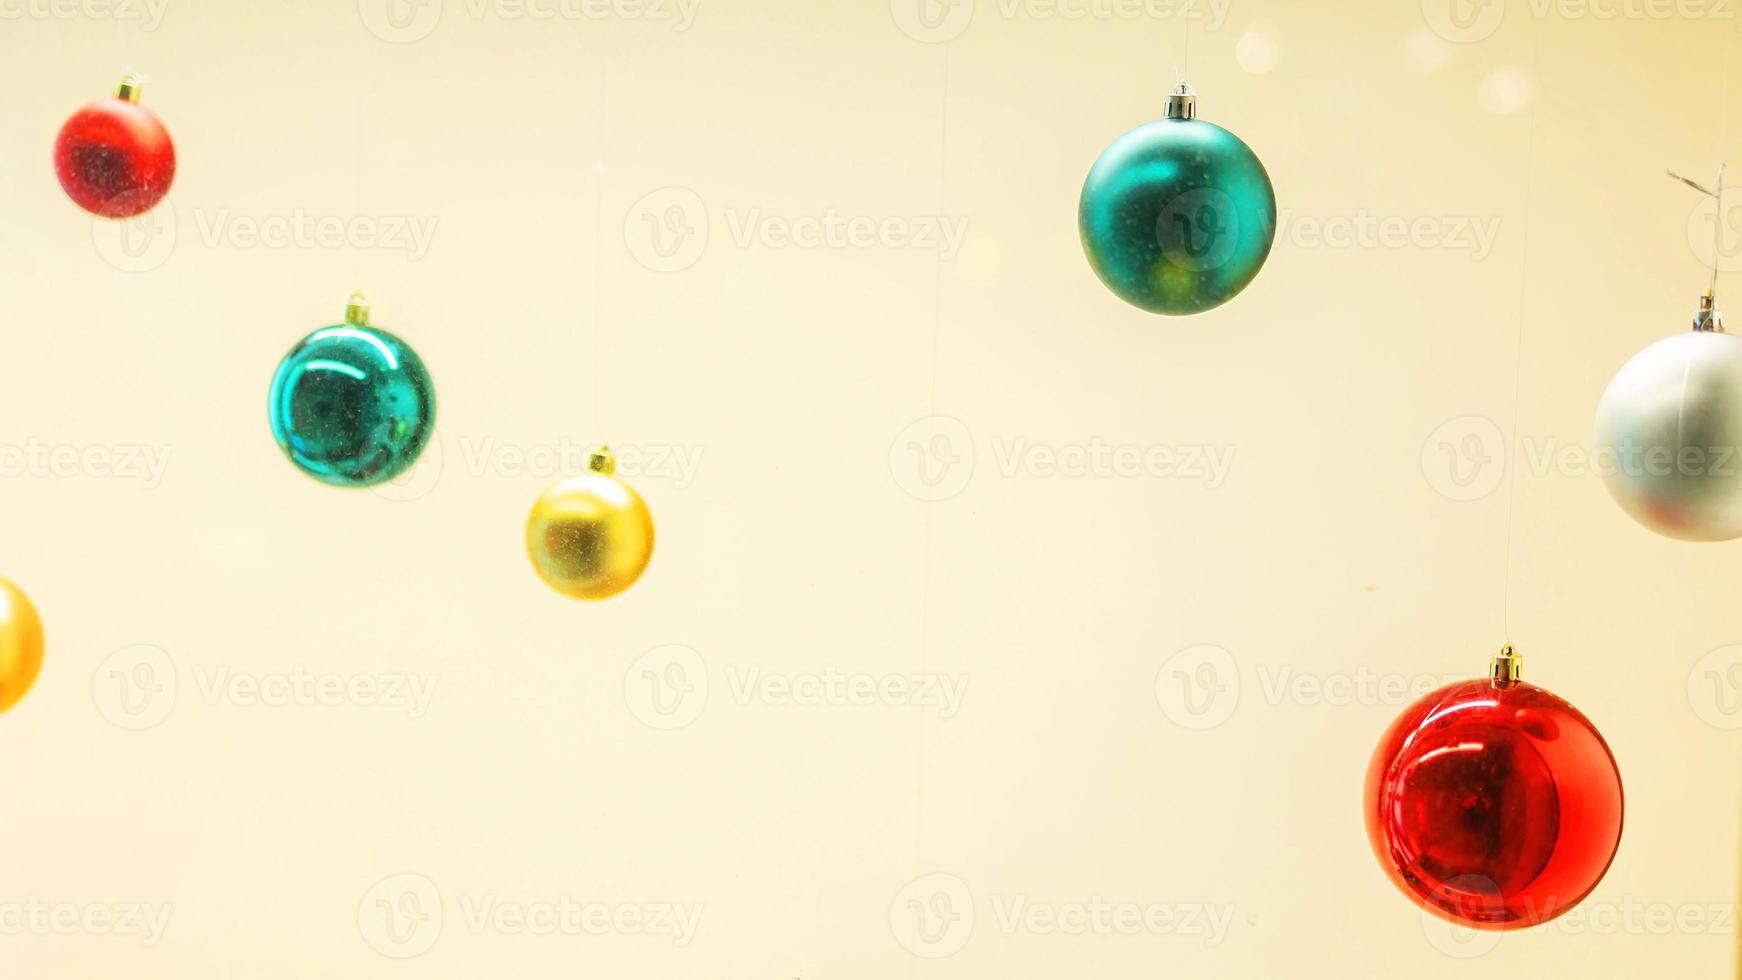 Banner Weihnachten Bälle Dekoration im Einkaufen Einkaufszentrum - - Ferien und Weihnachten dekorieren Konzept foto